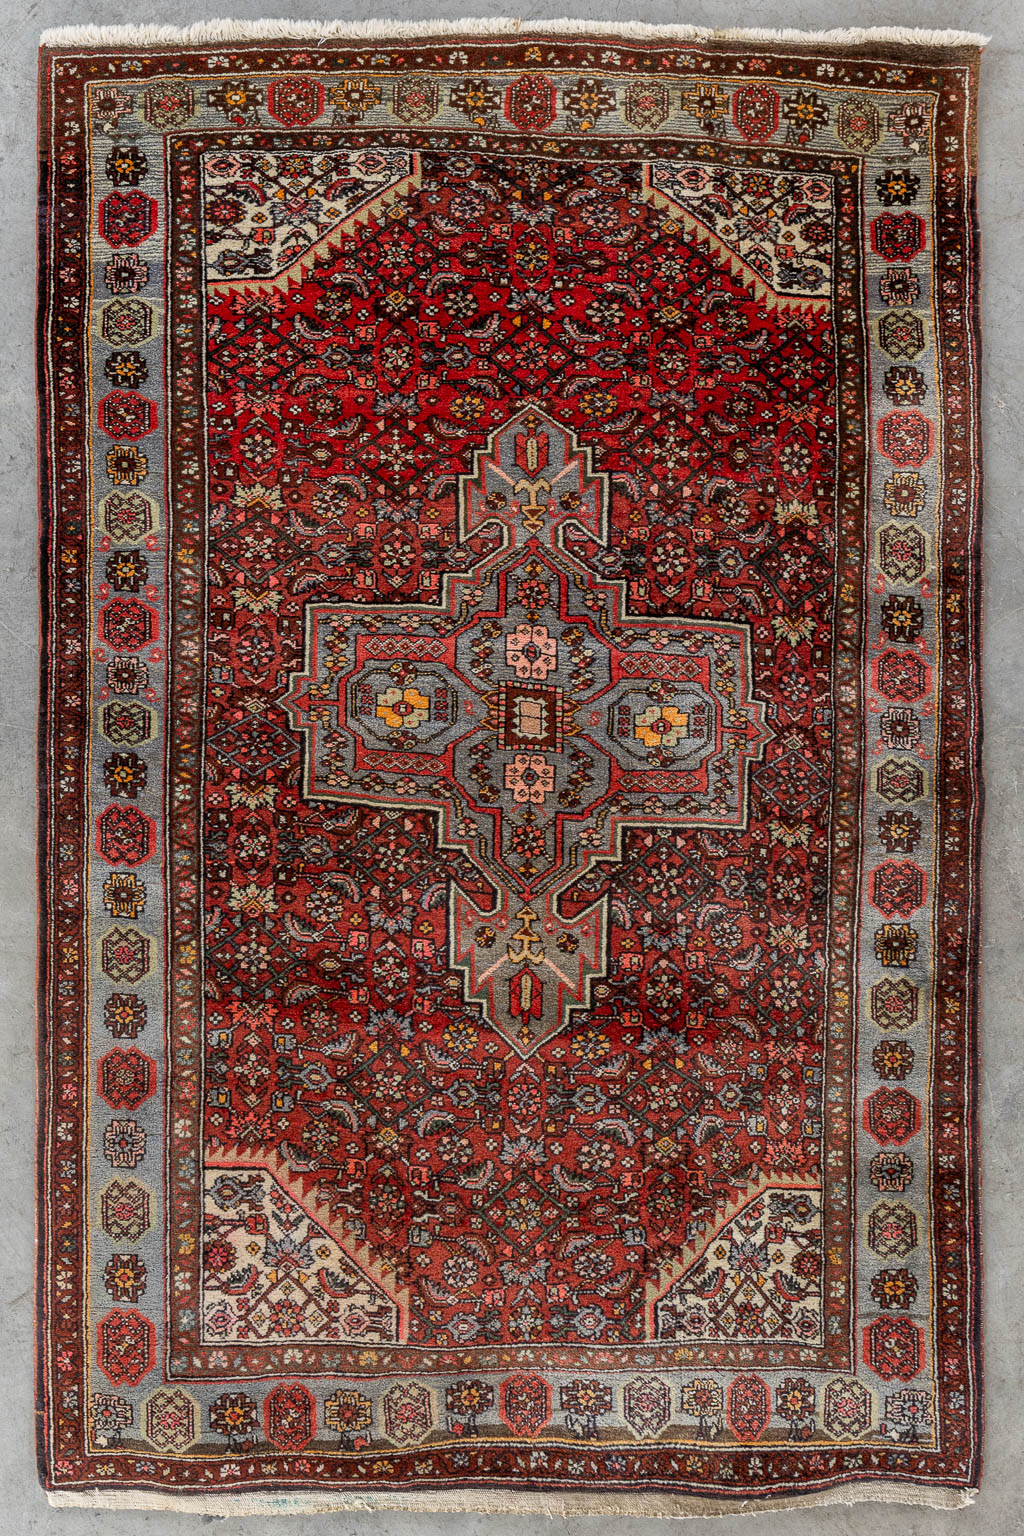 Lot 210 Een Oosters handgeknoopt tapijt, Hamadan. (L:197 x W:127 cm)